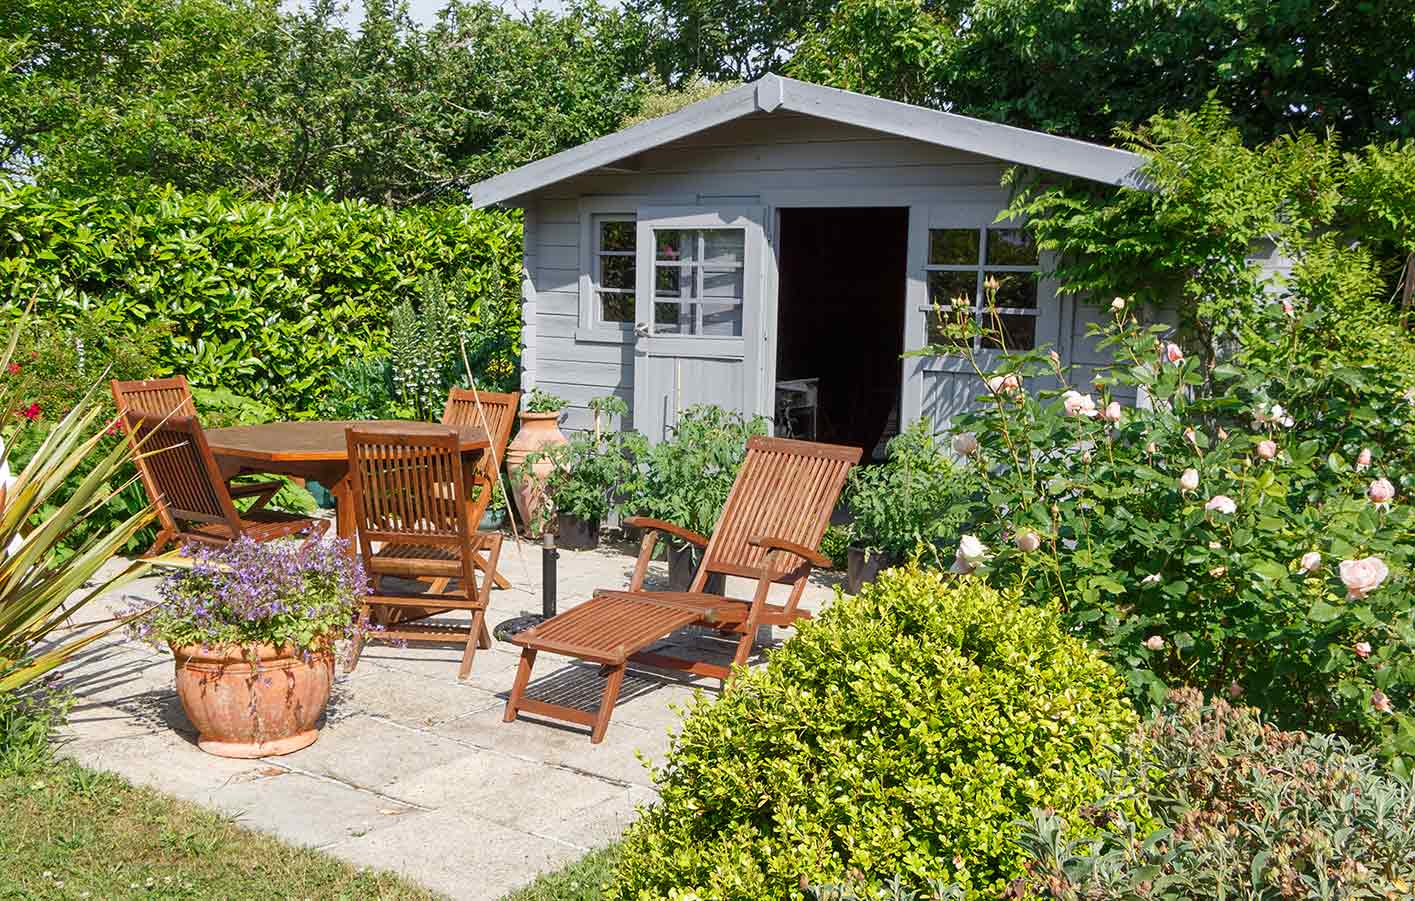 Gartenmöbel aus MAssivholz vor einer Gartenhütte aus Holz mit Spitzdach